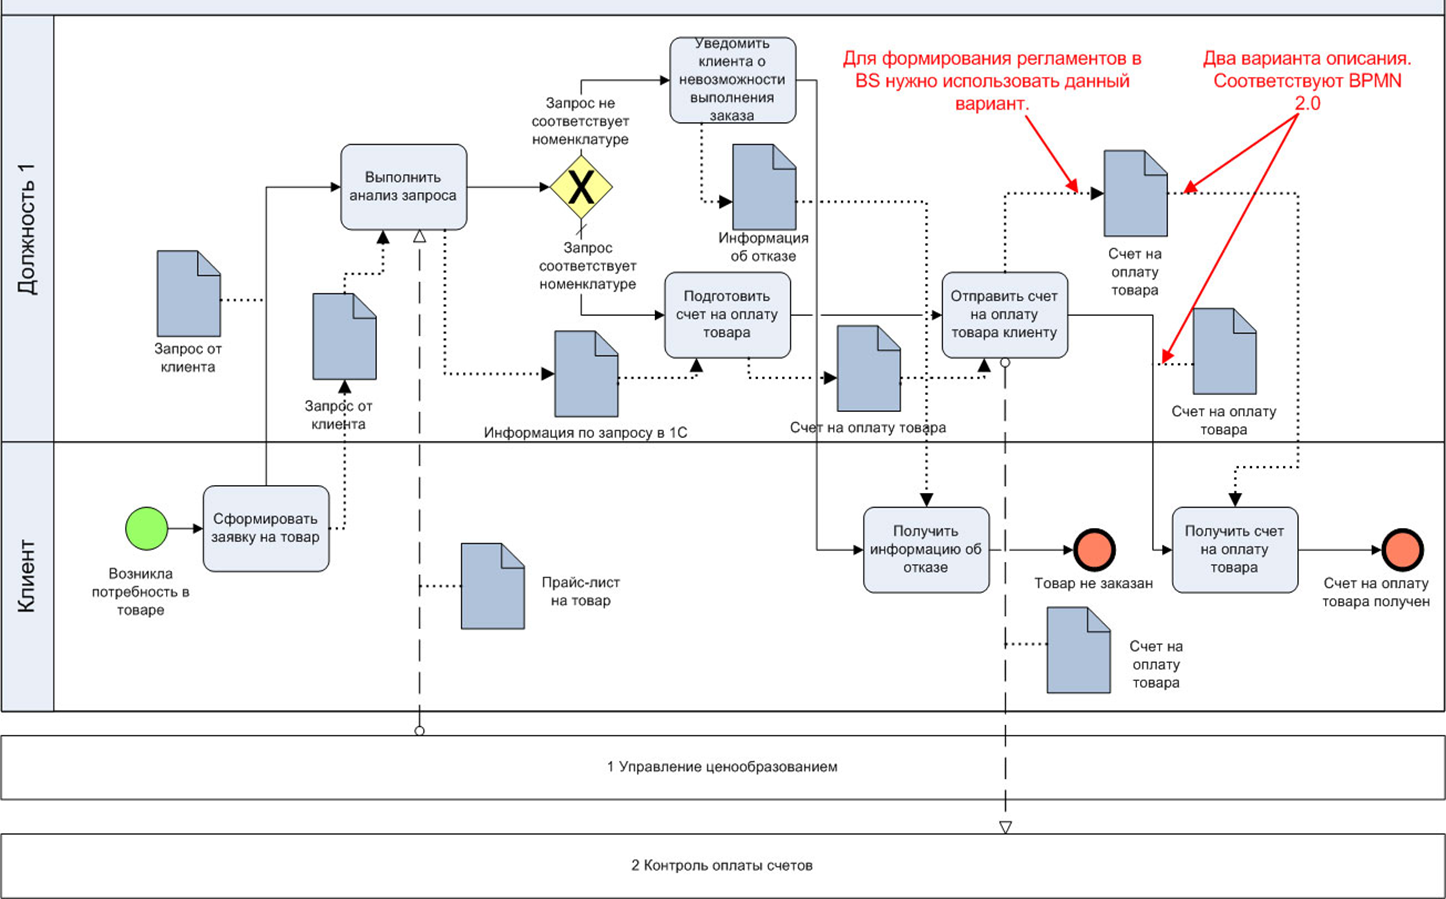 Схема процесса в нотации BPMN. Диаграмма бизнес процессов BPMN 2.0. Схема бизнес процесса в нотации BPMN. Бизнес процесс BPMN 2.0. Модель описания бизнес процесса